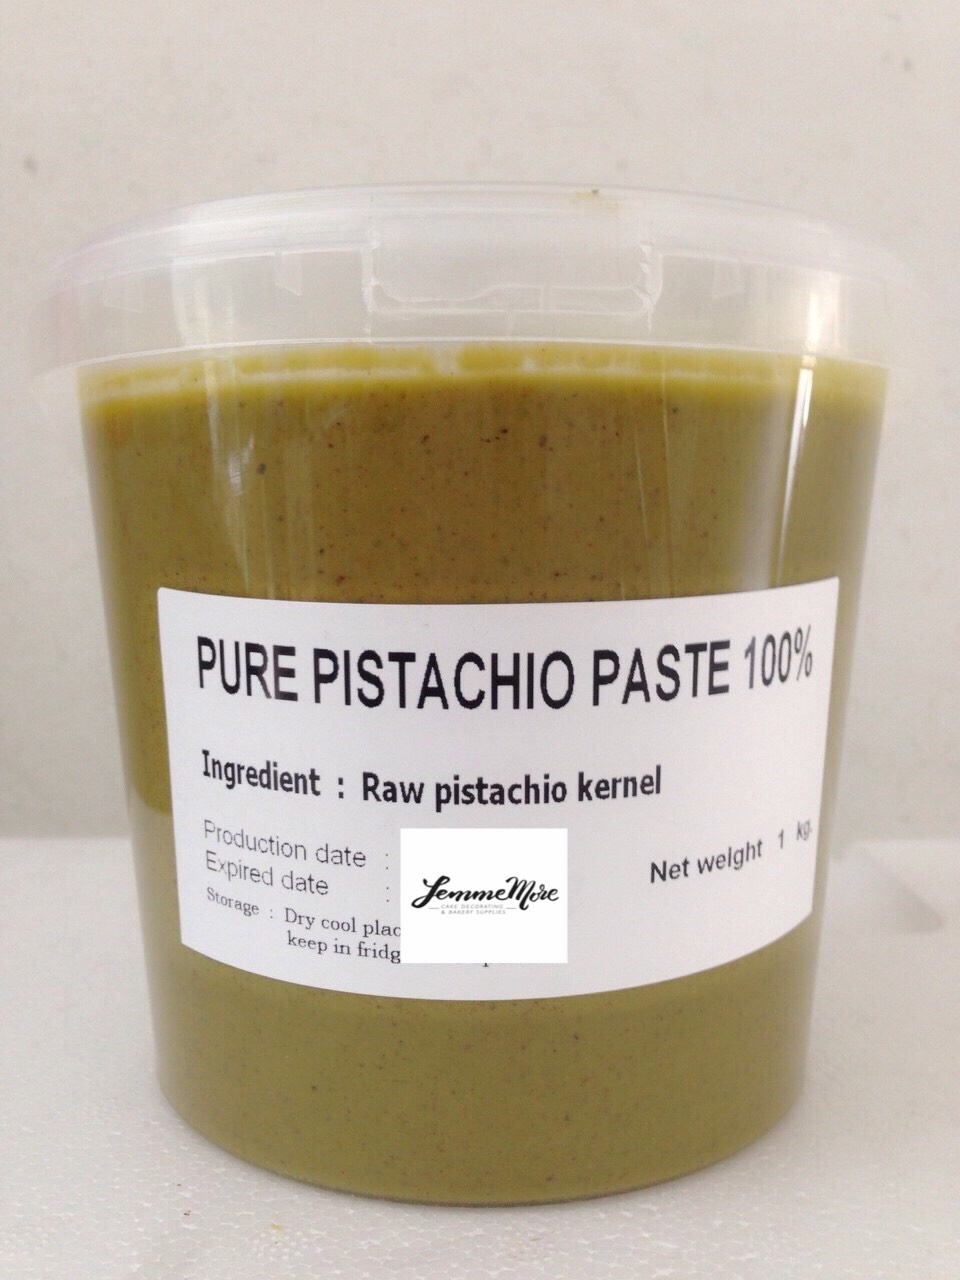 Pure Pistachio Paste 100%